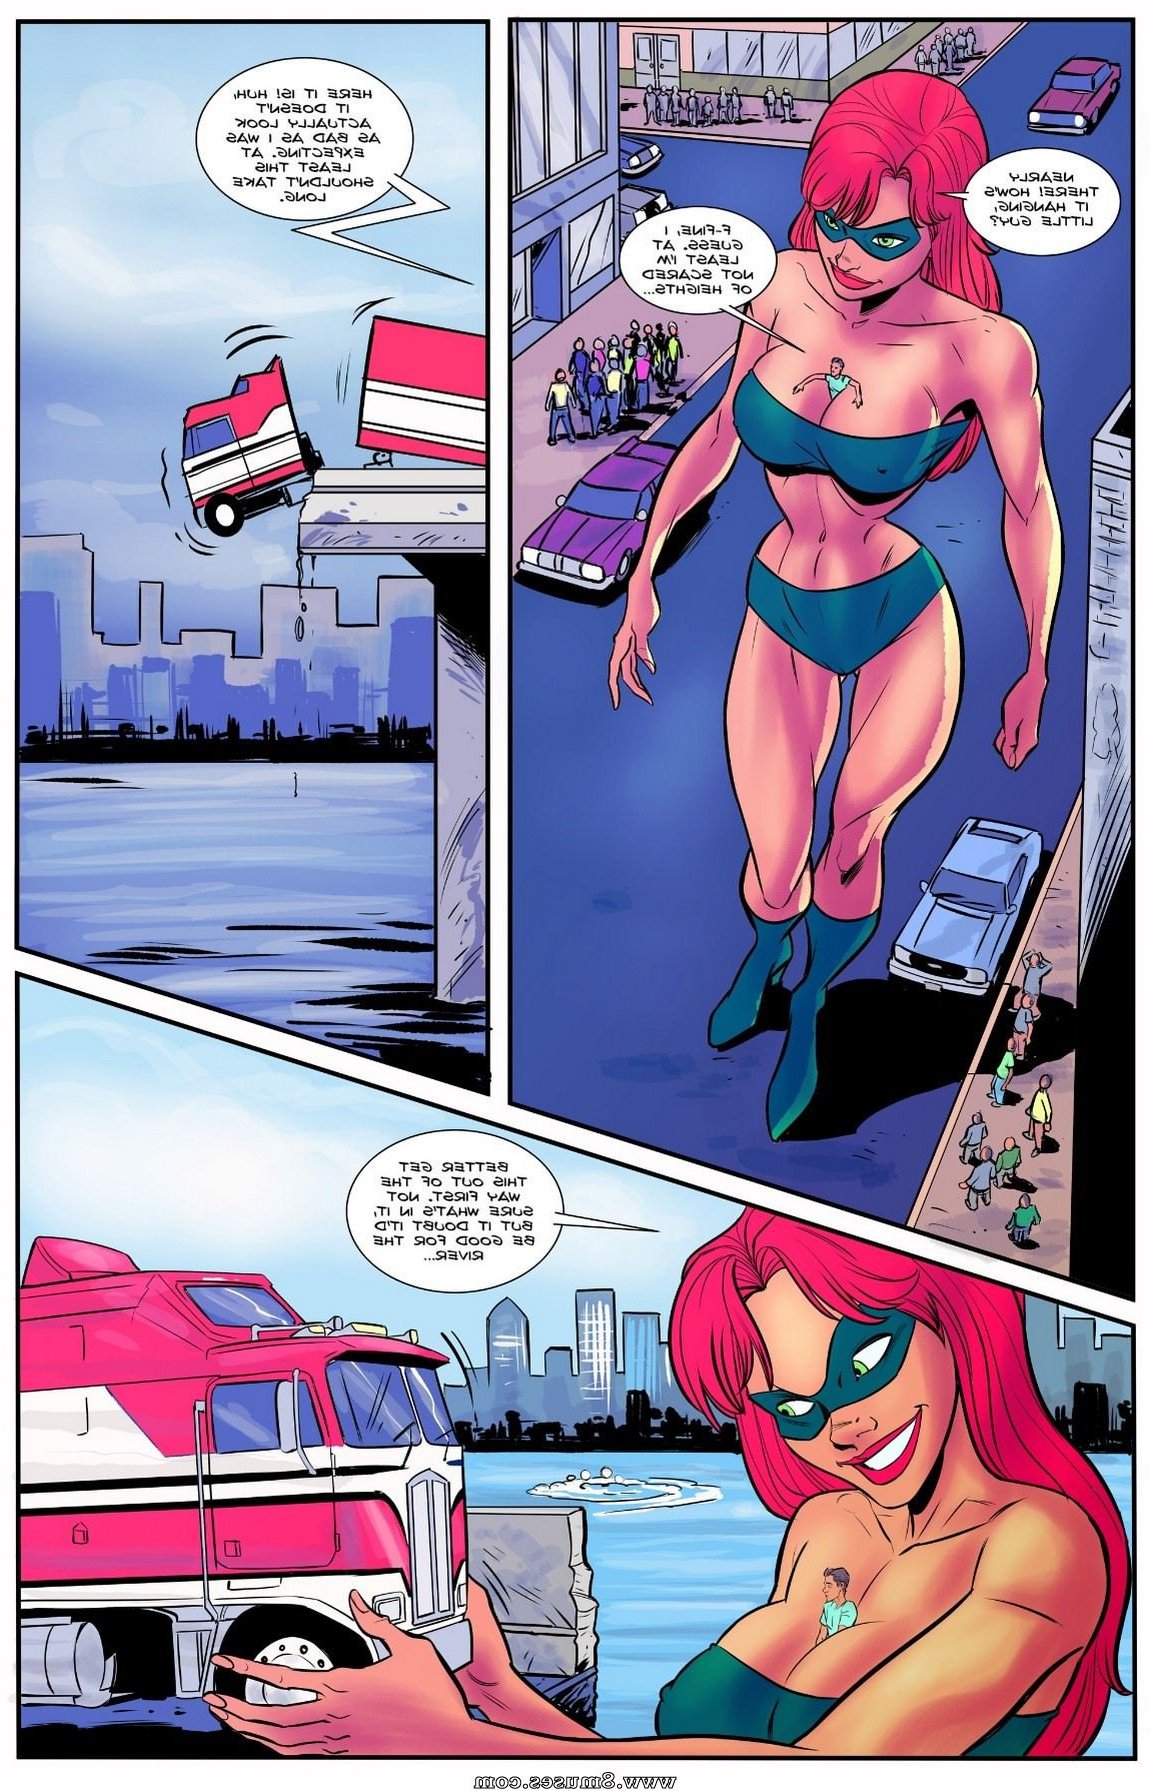 Giantess-Club-Comics/The-Superheroines-Daughter/Issue-2 The_Superheroines_Daughter_-_Issue_2_7.jpg